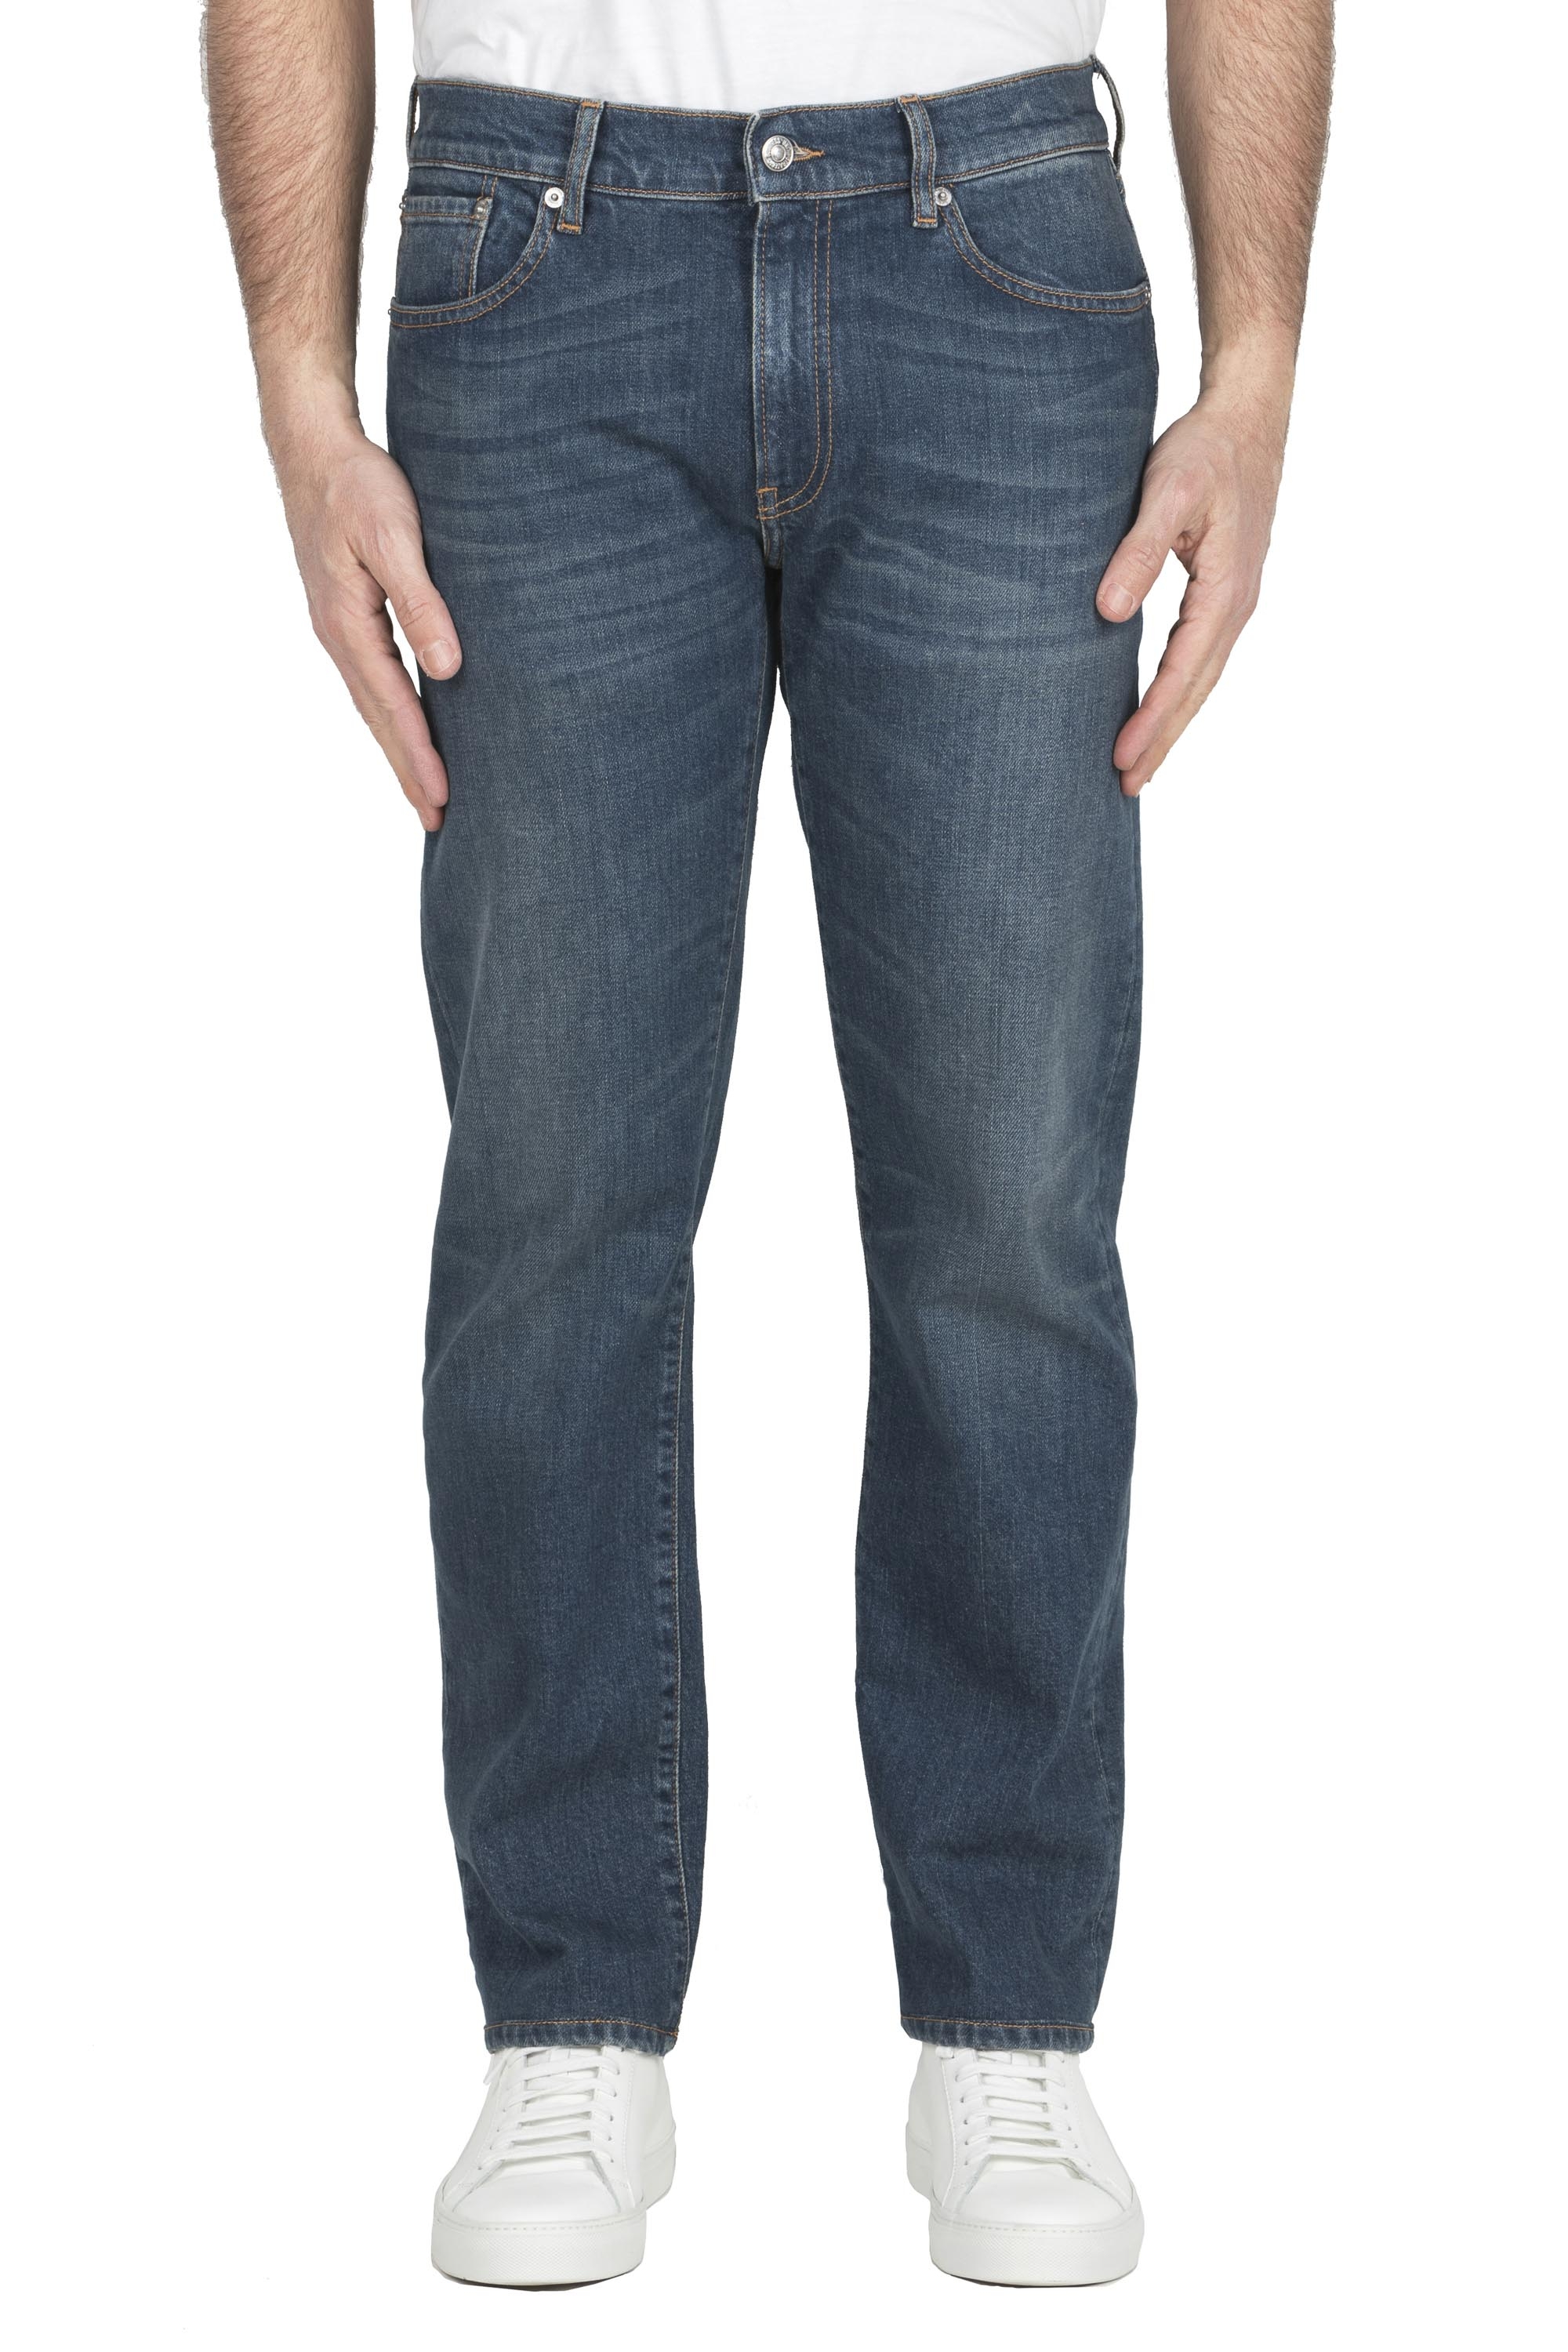 SBU 04962_24SS Teint pur indigo délavé à la pierre coton stretch jeans bleu 01